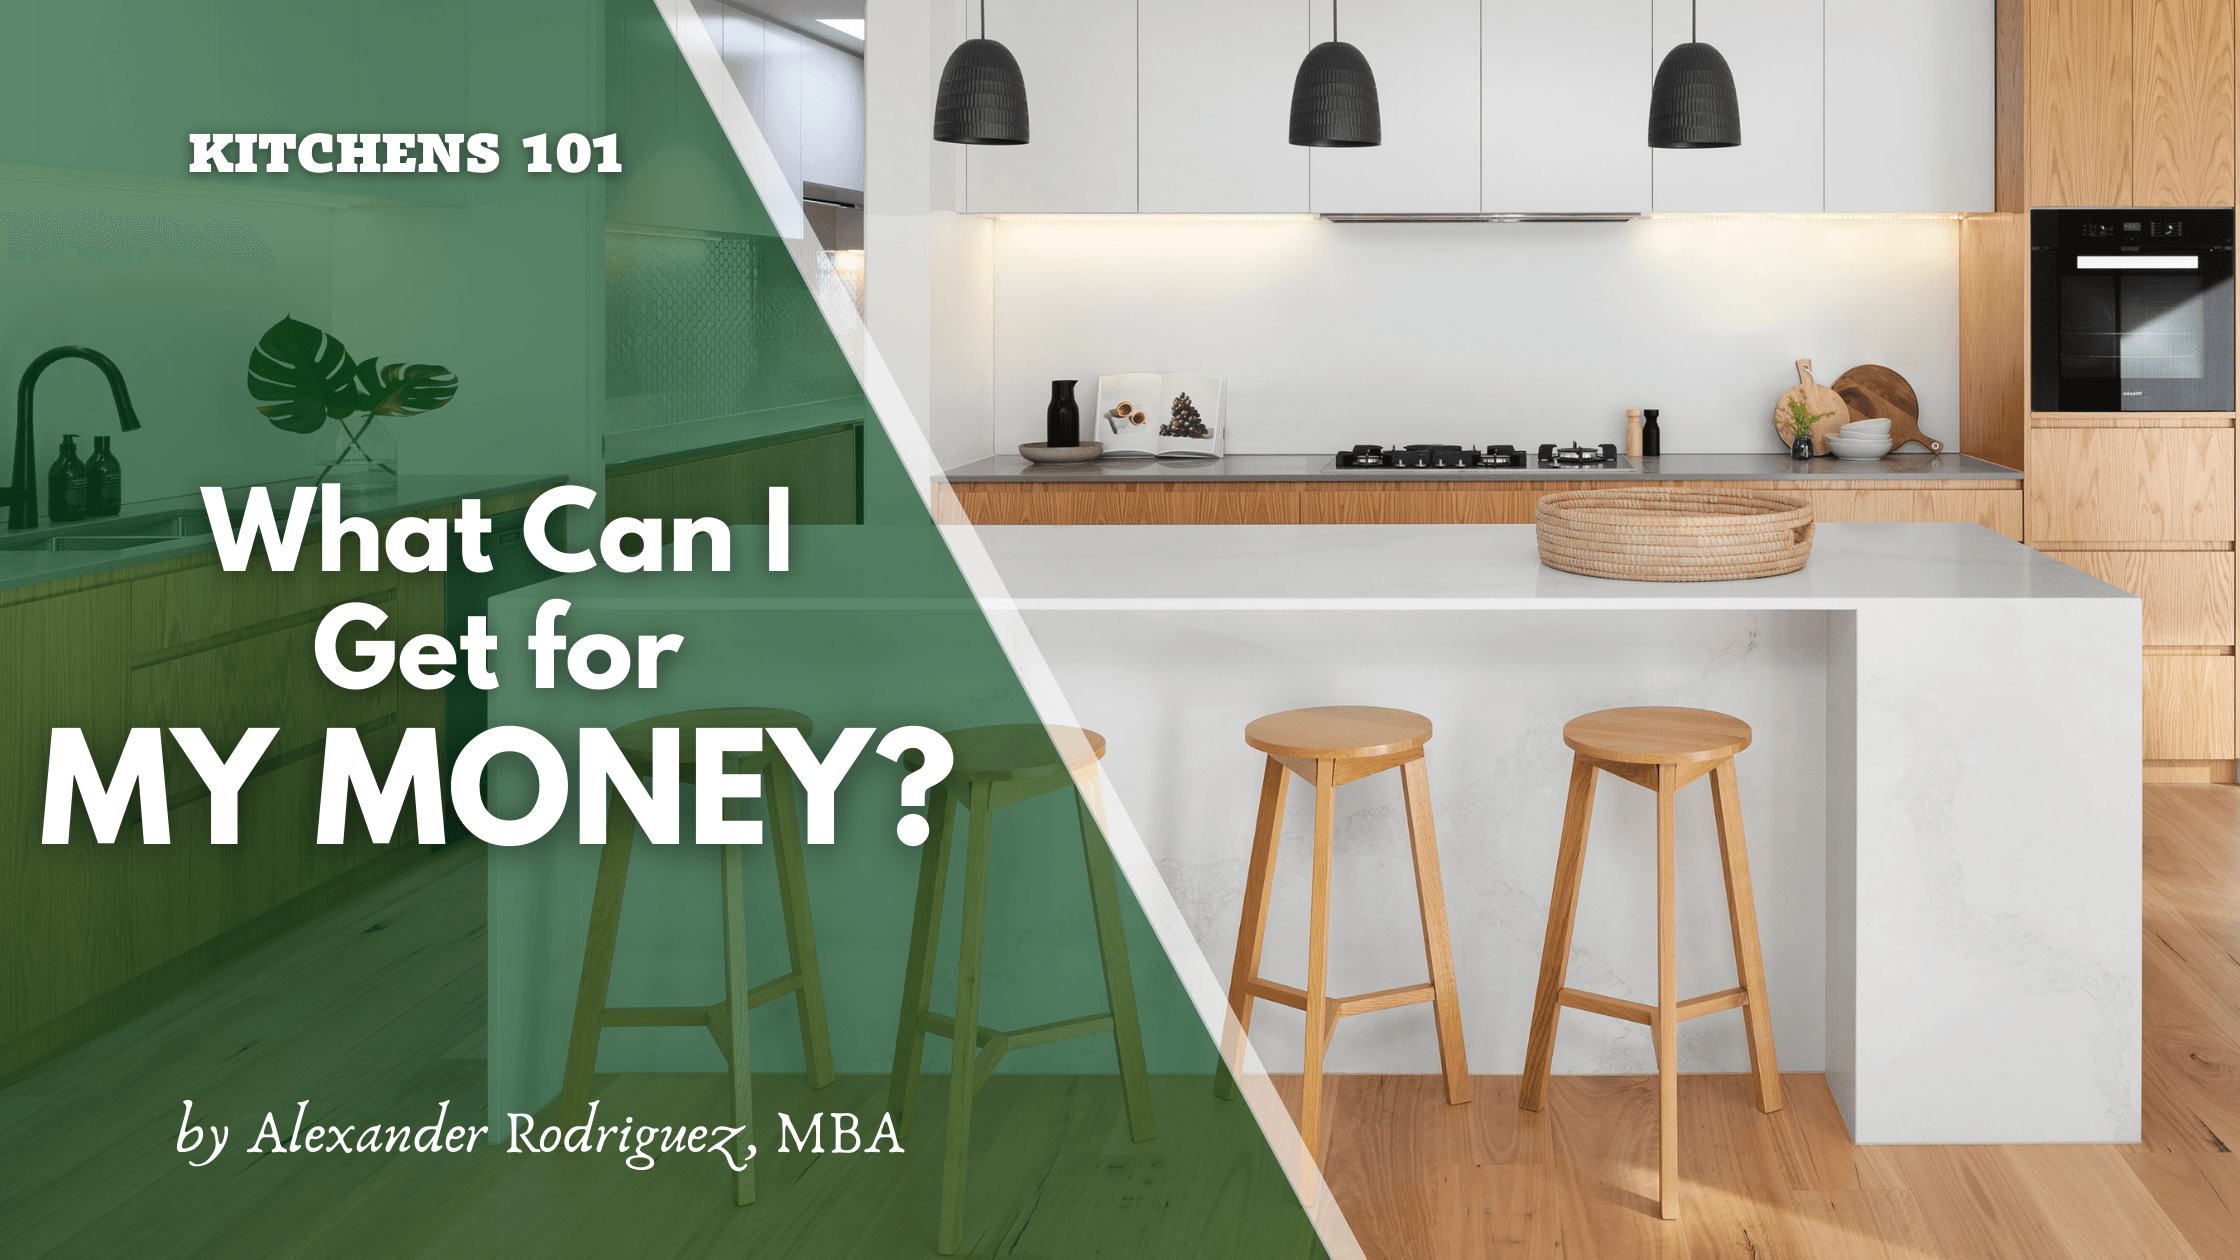 Blog - What Kitchen Can I Get got Money